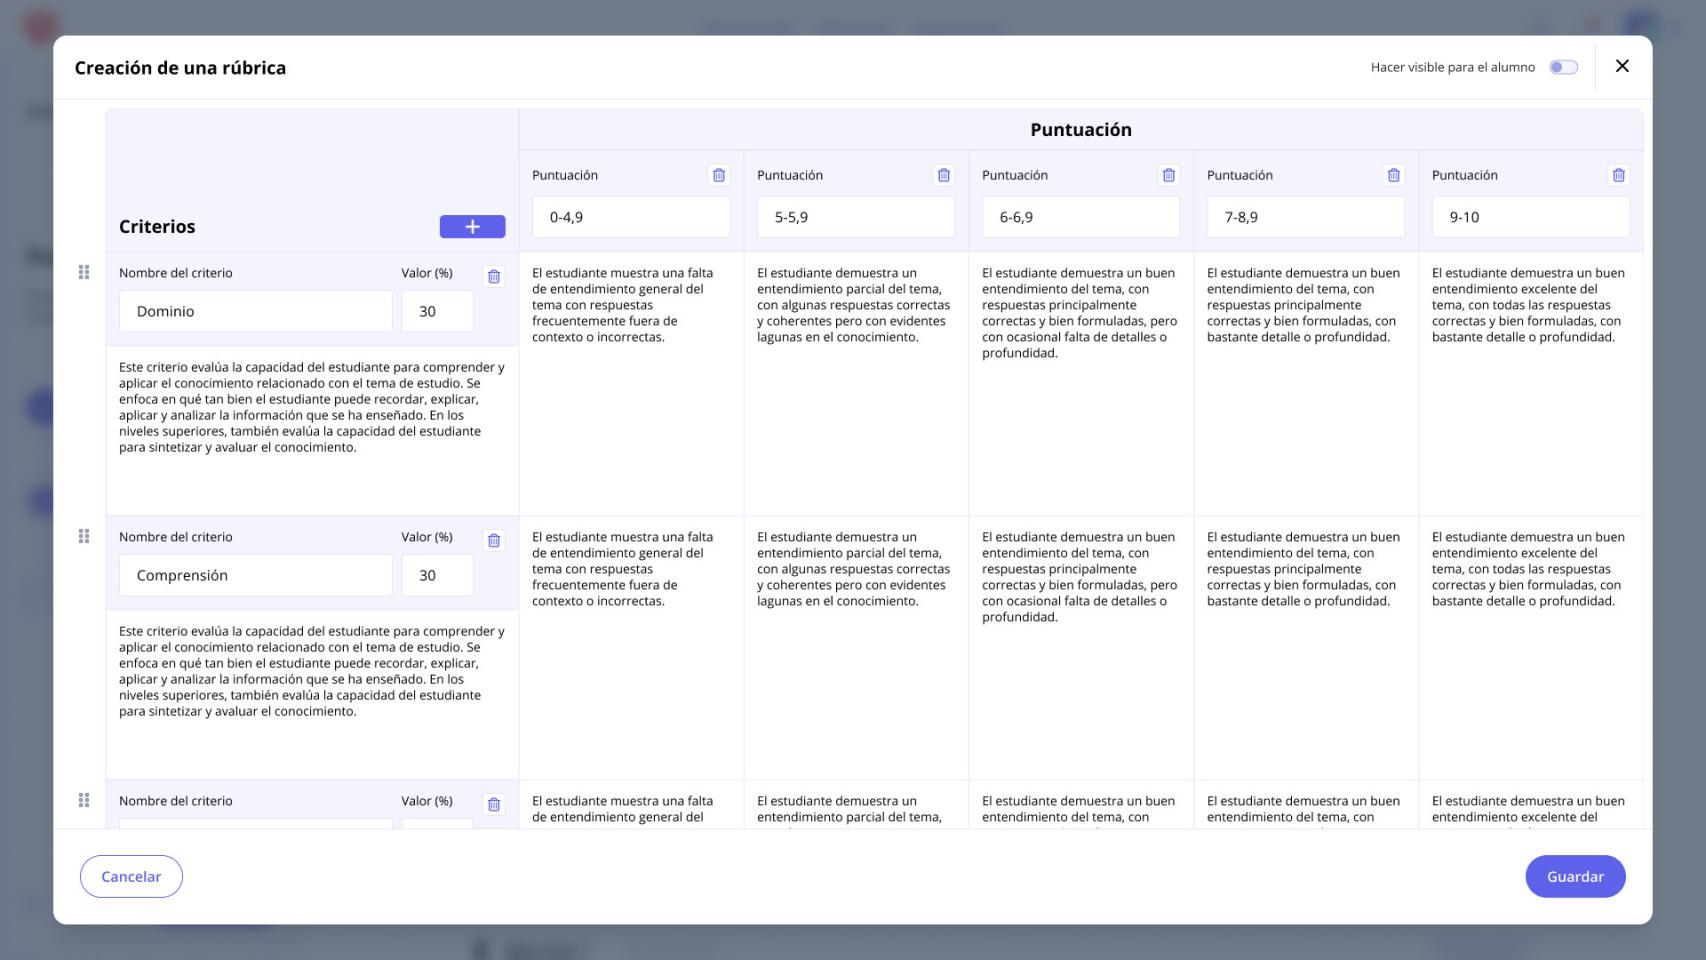 Imagen de Mathew, la plataforma que utiliza IA para ayudar al profesorados a elaborar contenidos prácticos.